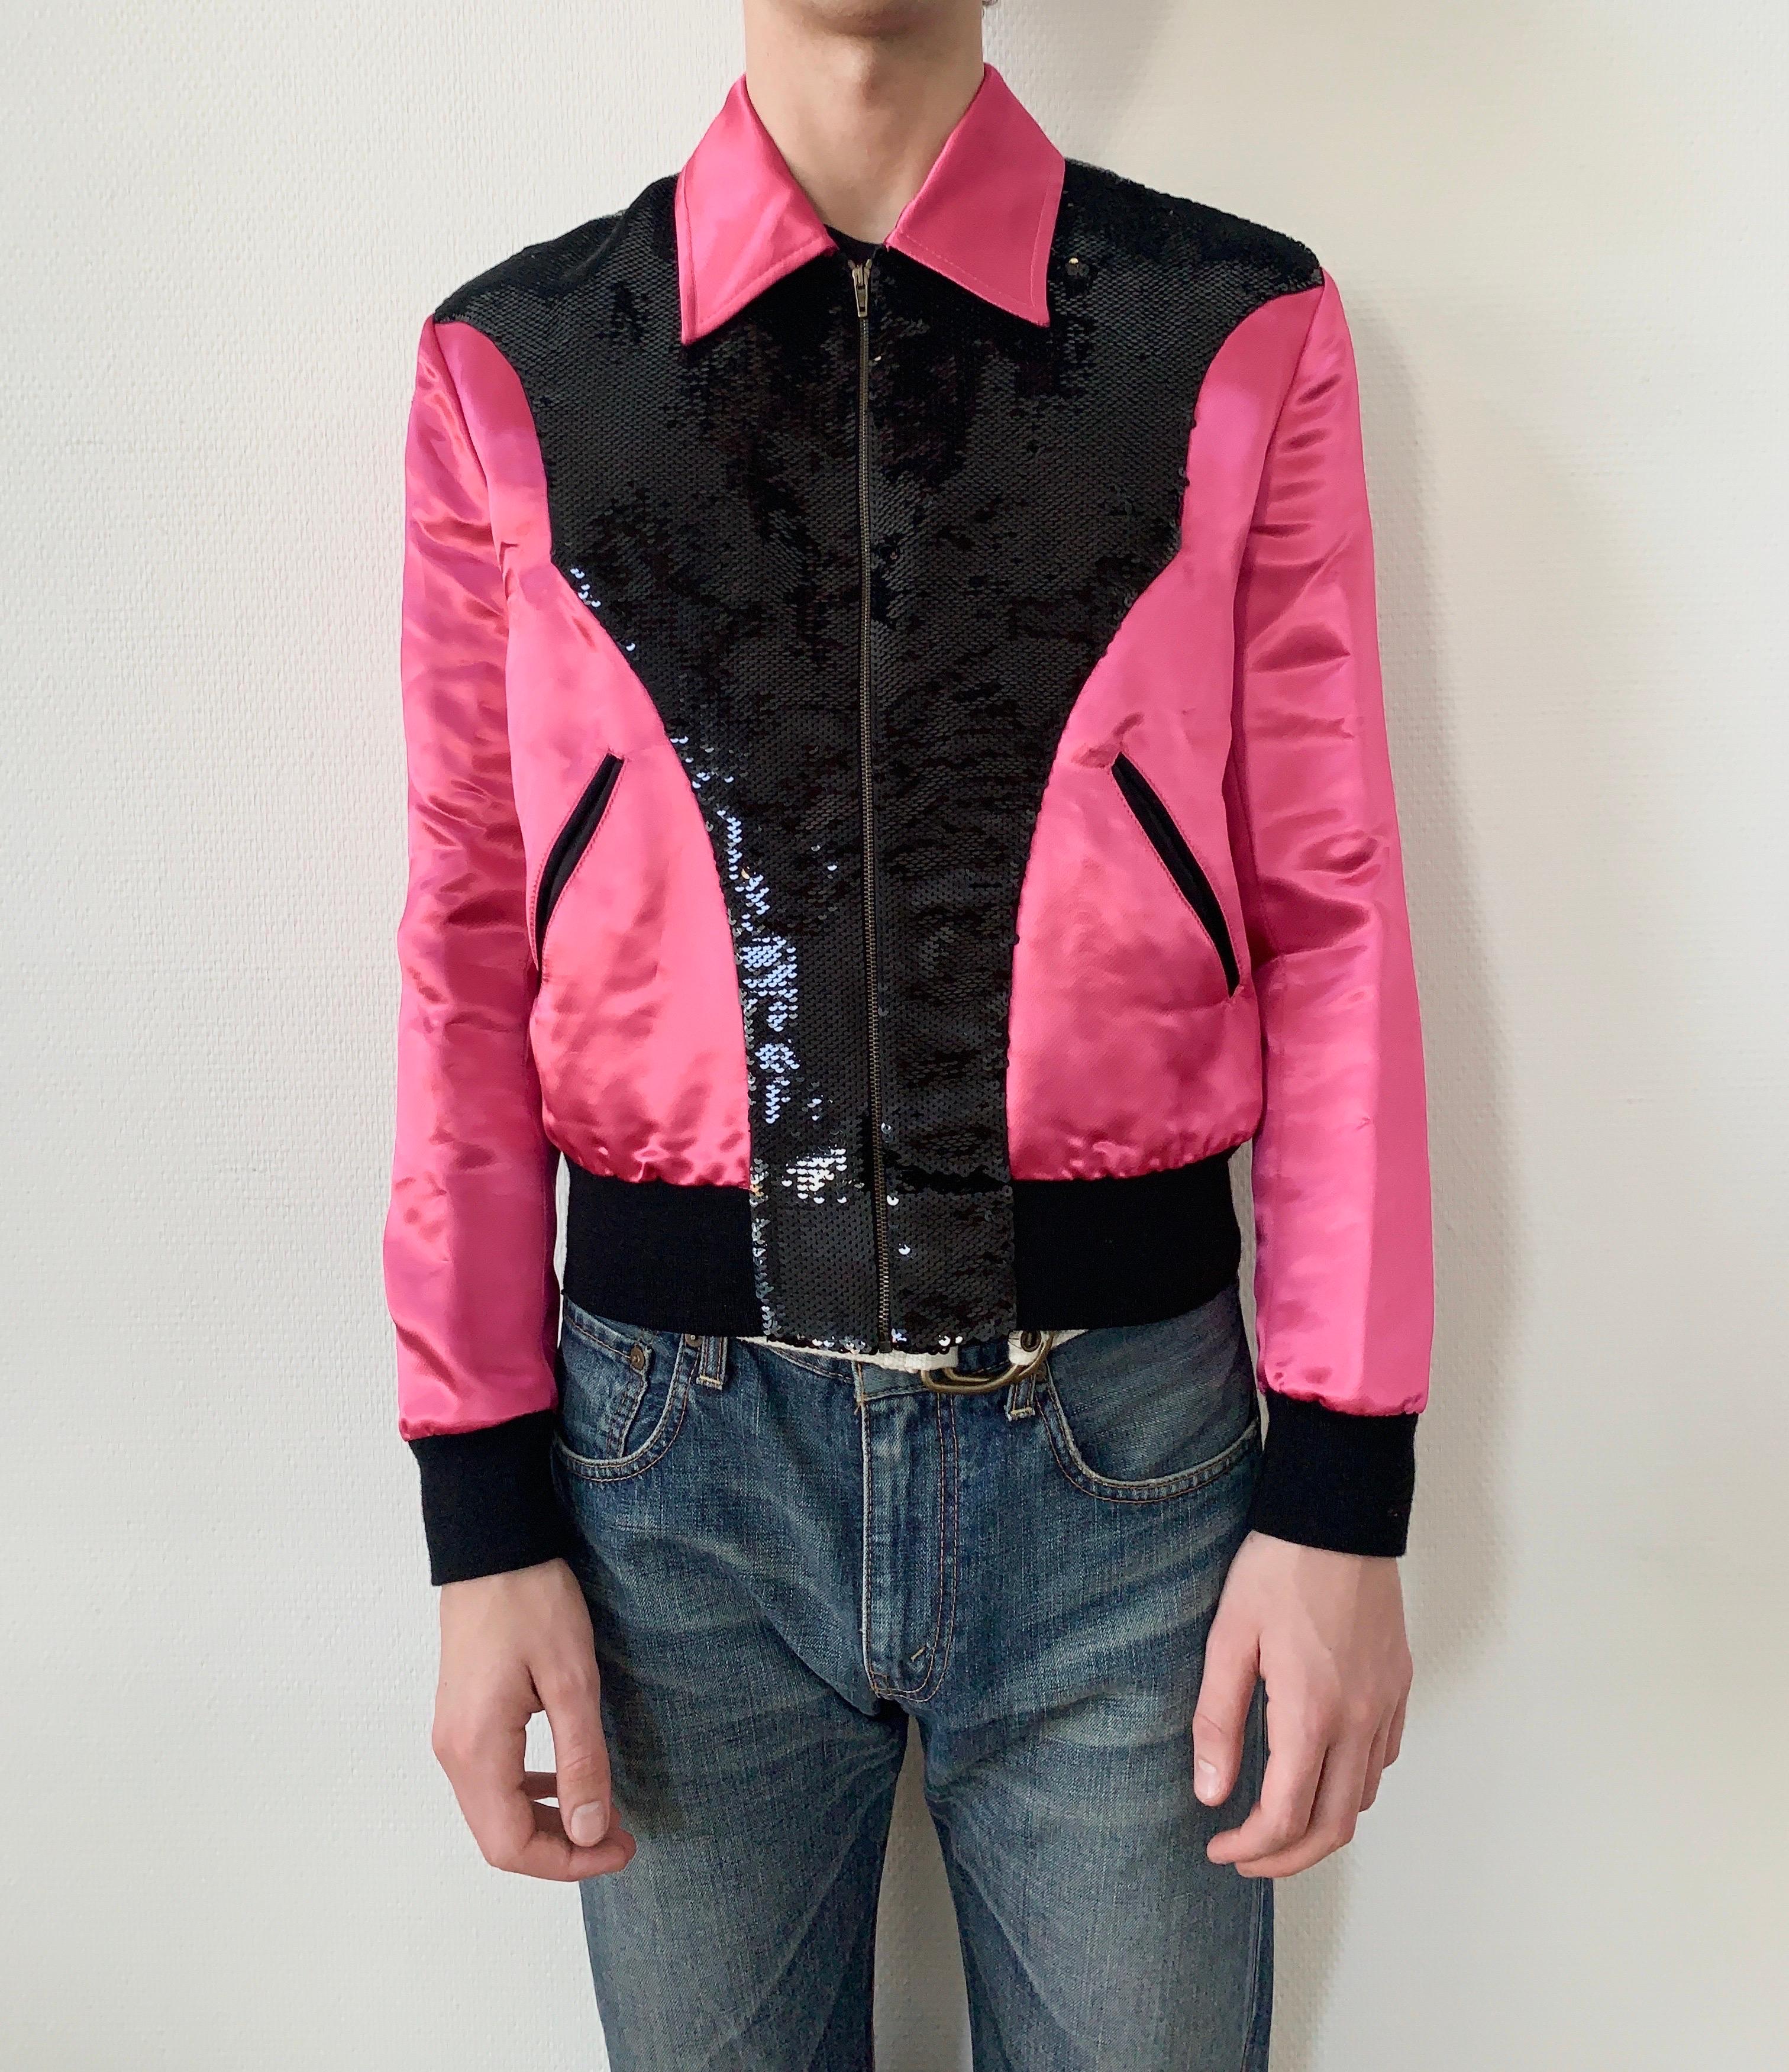 Saint Laurent Paris by Hedi Slimane FW2016 1/1 sample sequin jacket pink  In Excellent Condition For Sale In Bechtheim, DE